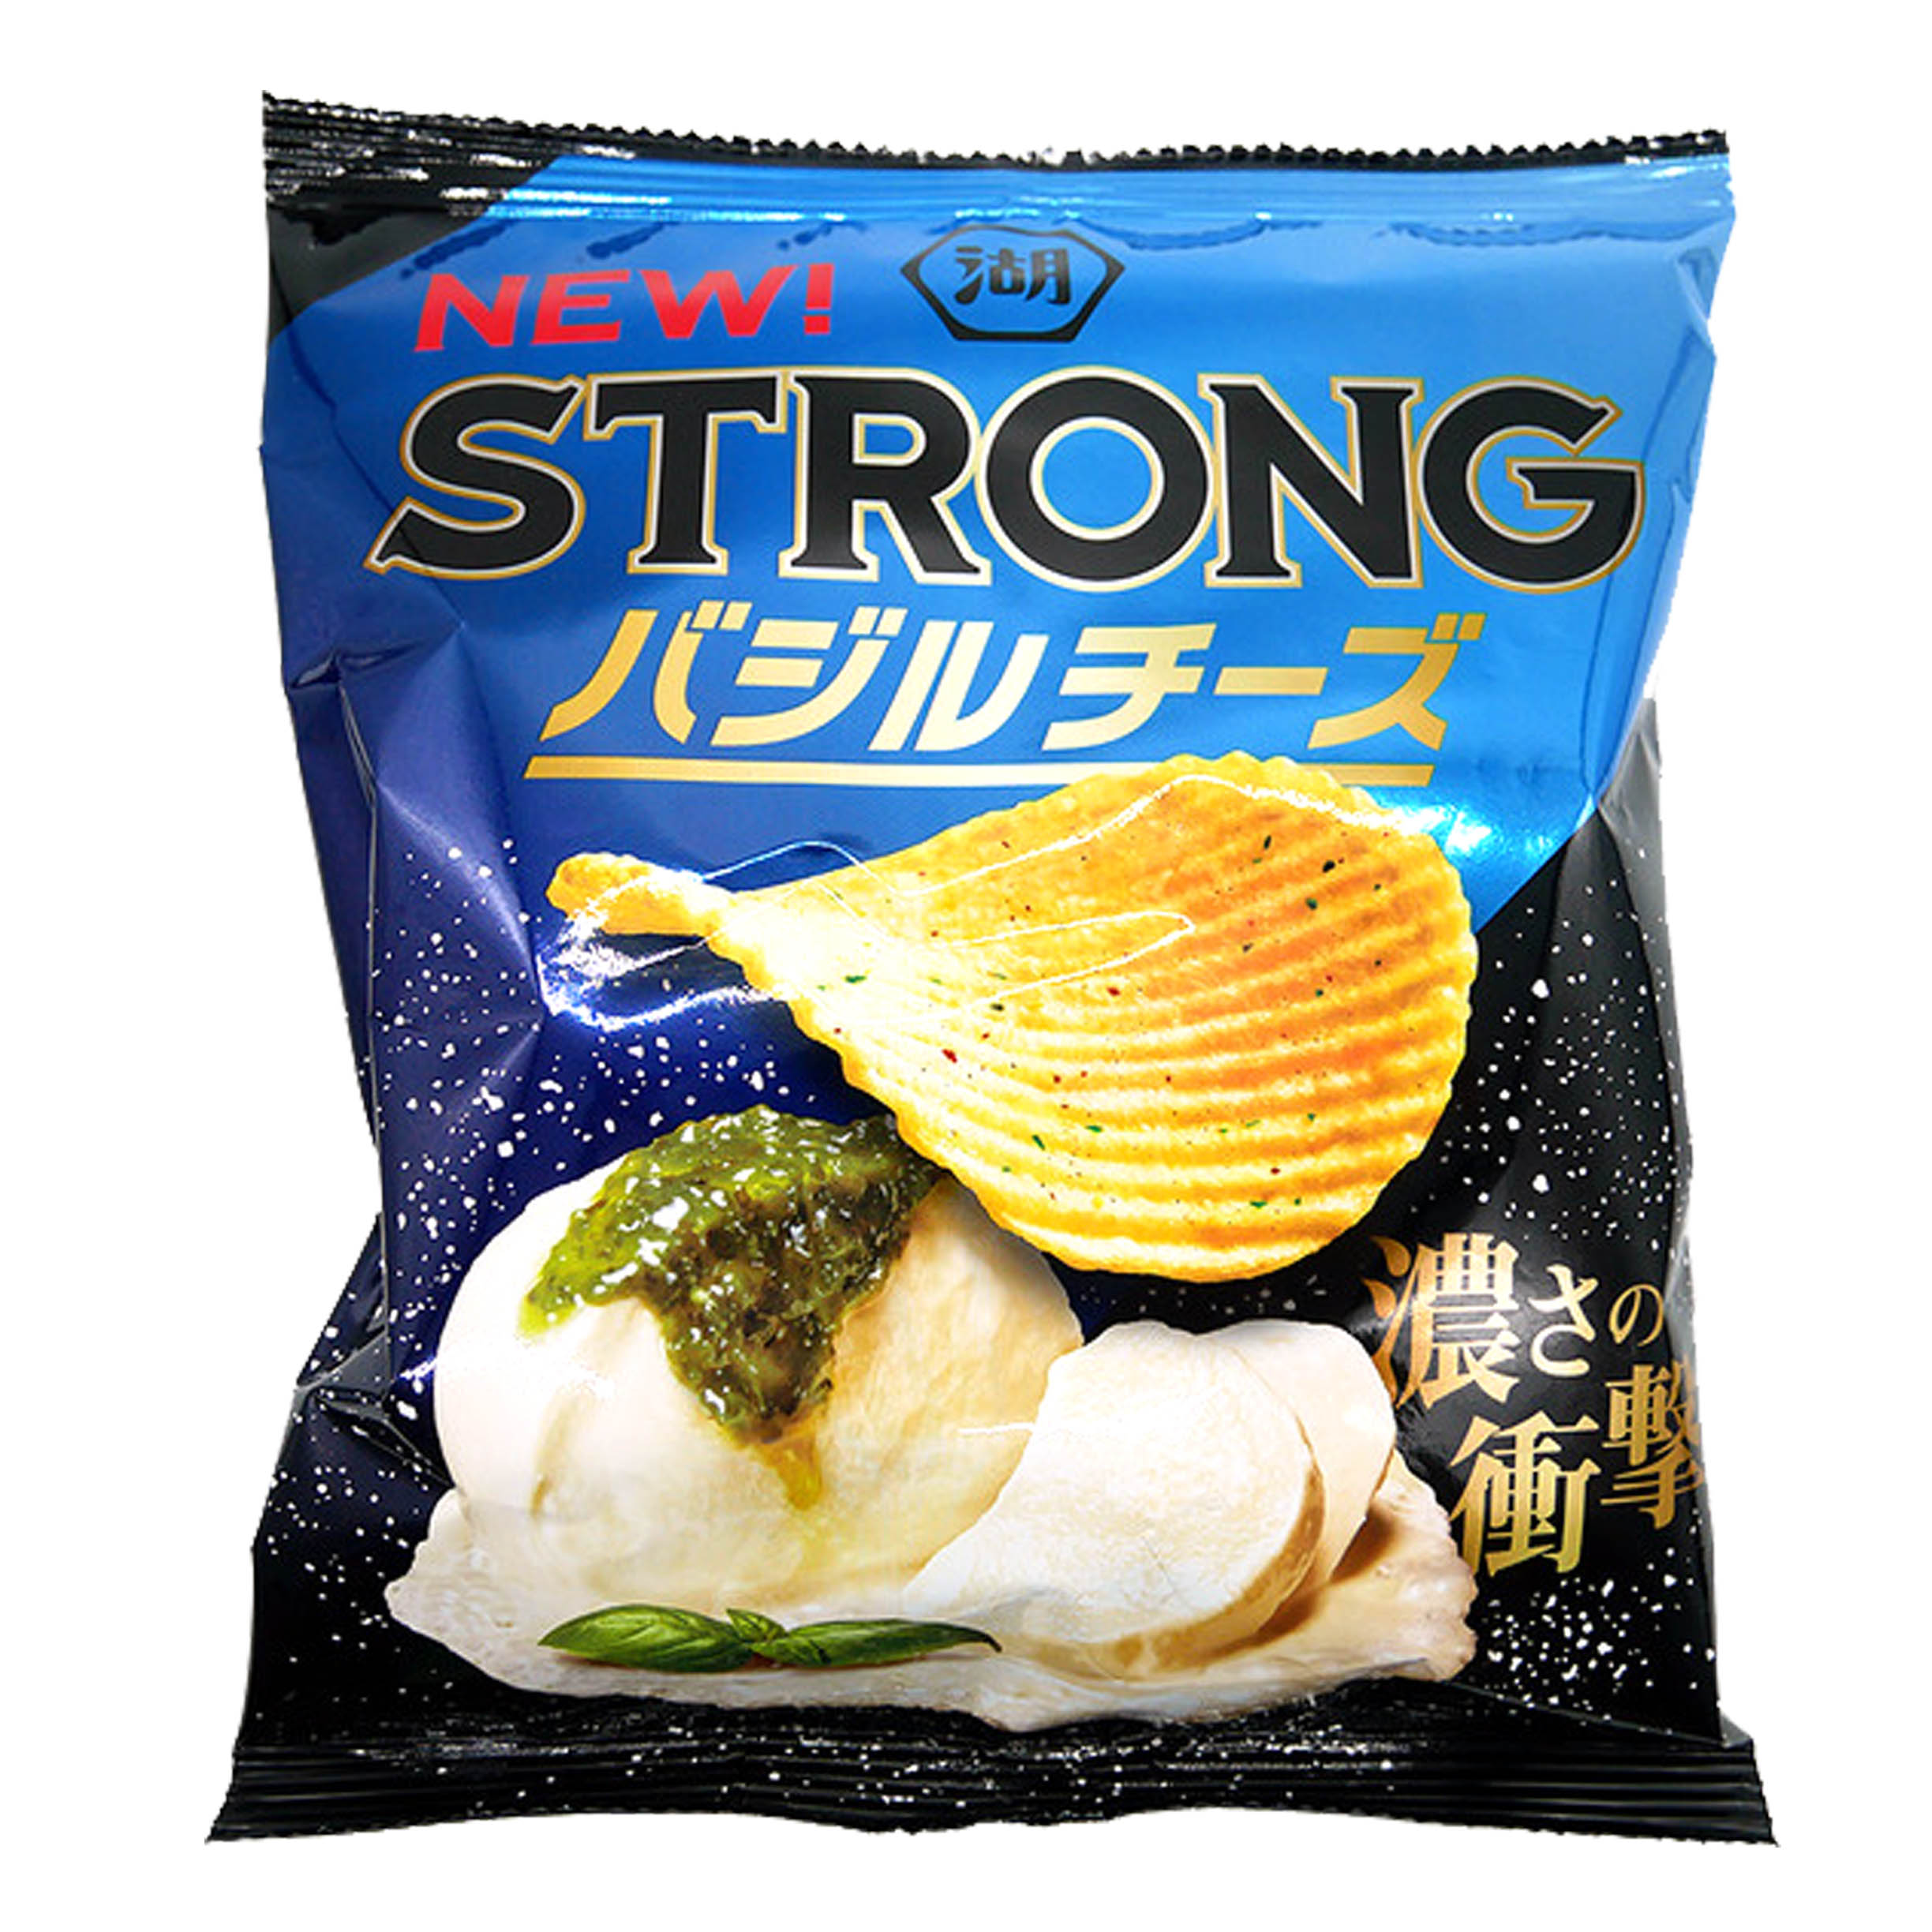 起司味洋芋片 52g-ポテトチップス バジルチーズ湖池屋 KOIKEYA コイケヤ 日本進口製造